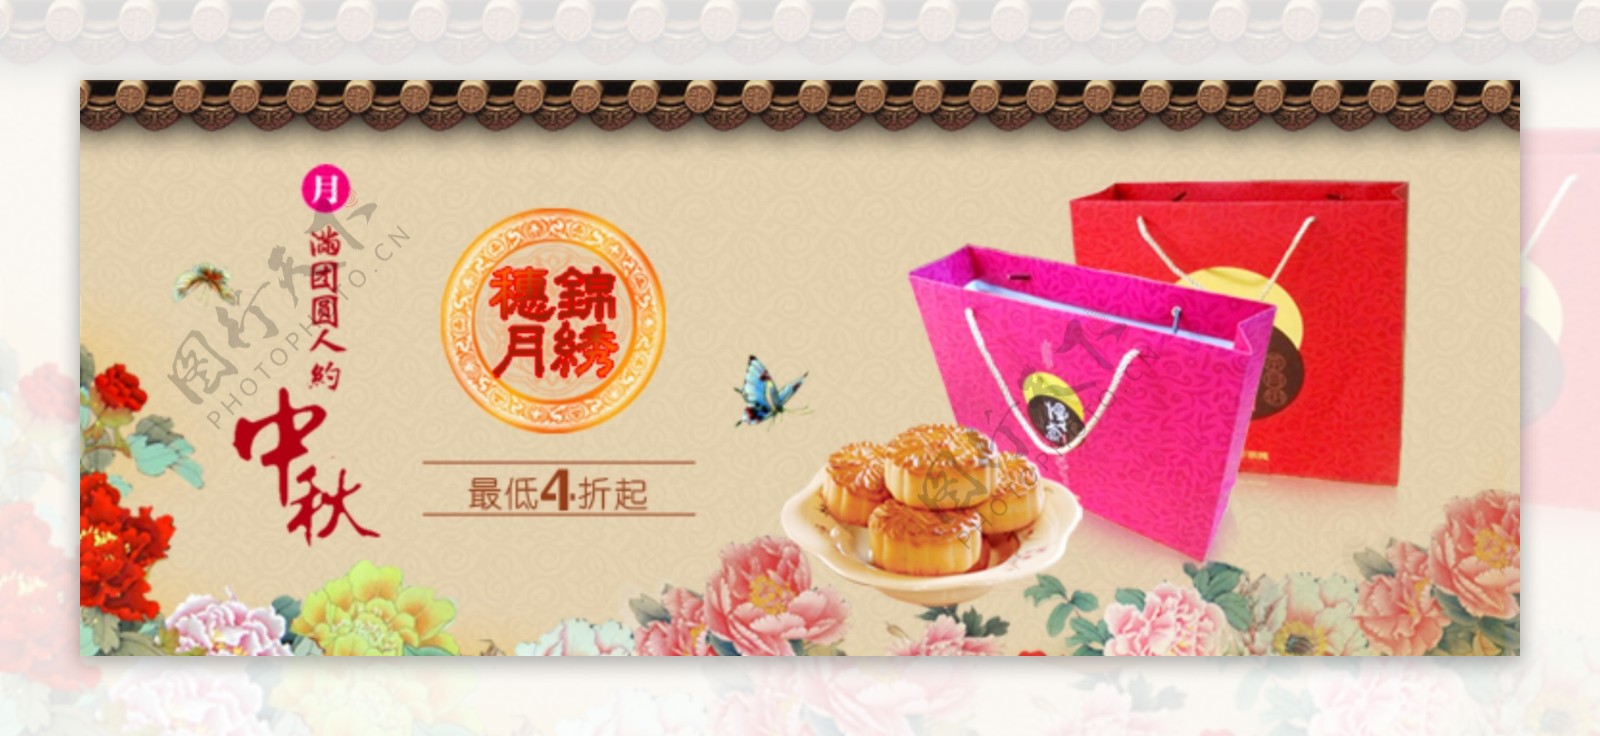 淘宝中秋月饼促销海报设计